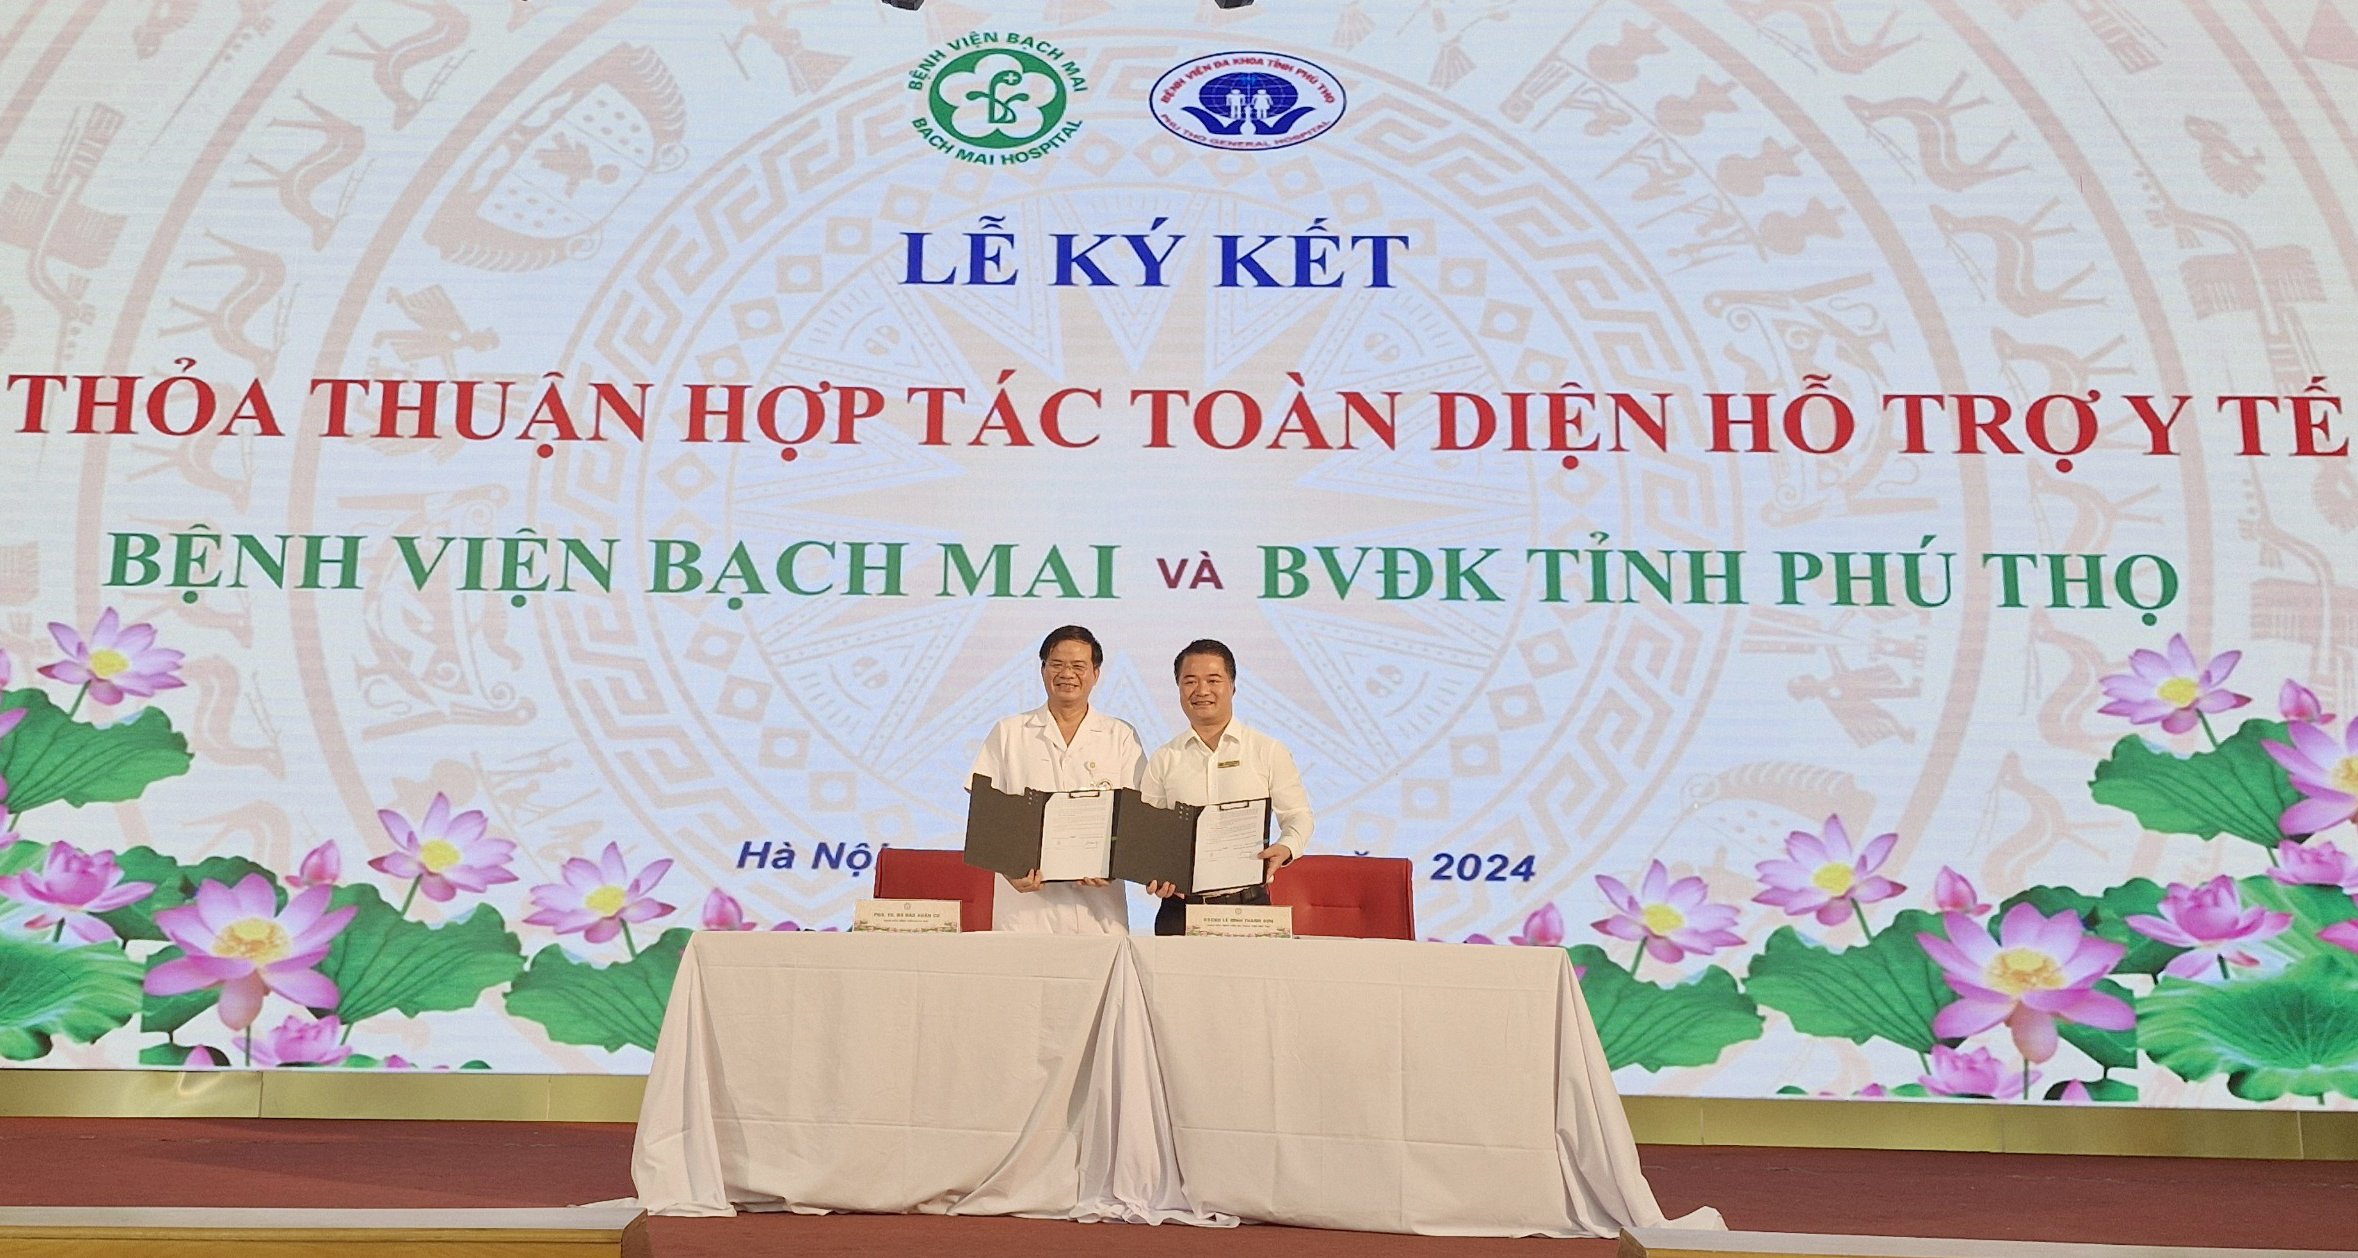 Lãnh đạo Bệnh viện đa khoa tỉnh Phú Thọ và Bệnh viện Bạch Mai ký kết thỏa thuận hỗ trợ y tế và hợp tác toàn diện